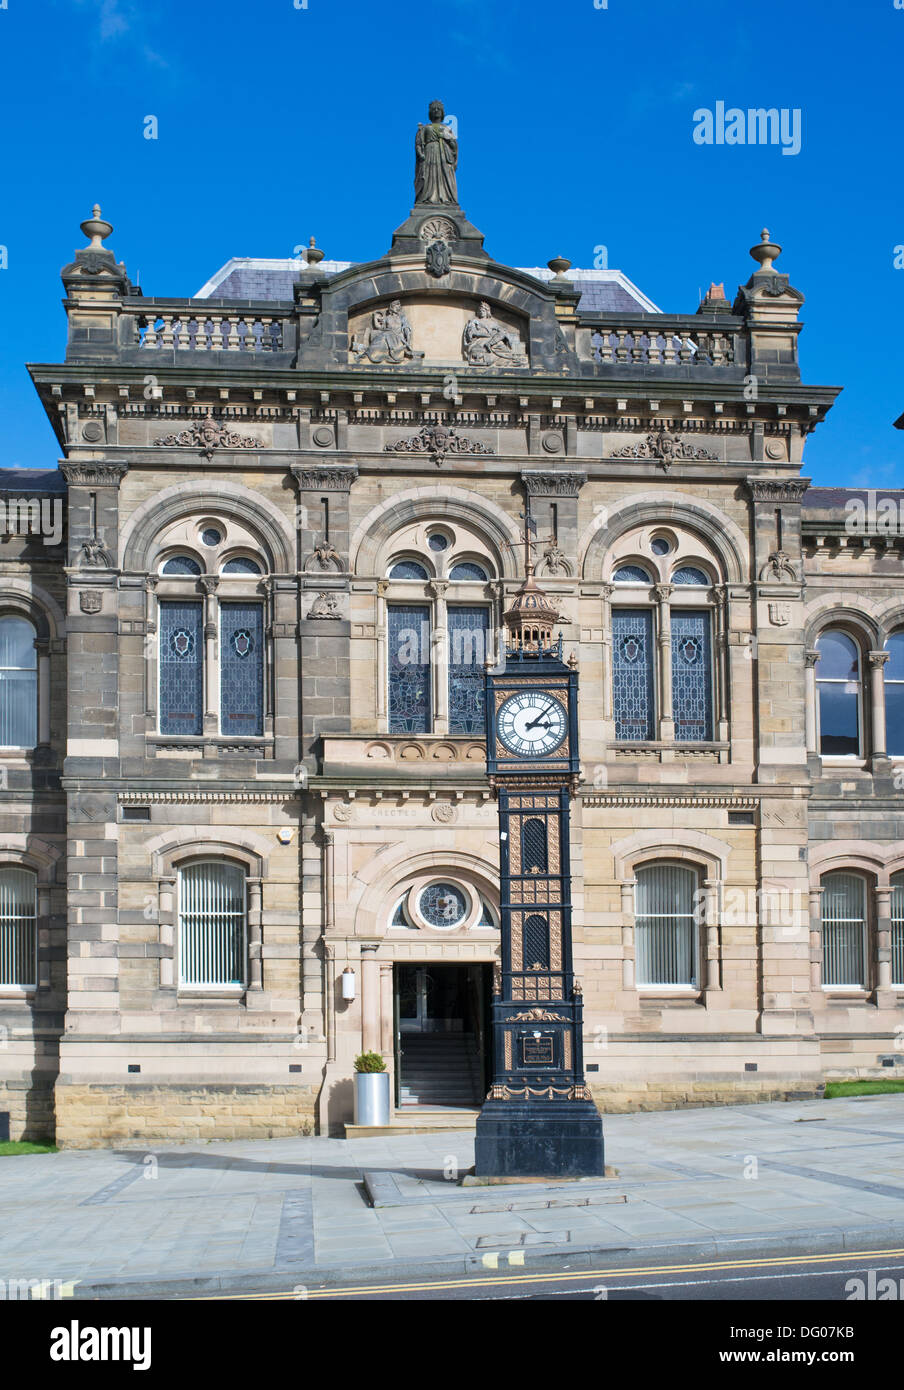 La torre dell'orologio in ghisa elencata prima del vecchio municipio di Gateshead, Inghilterra nord-orientale, Regno Unito Foto Stock